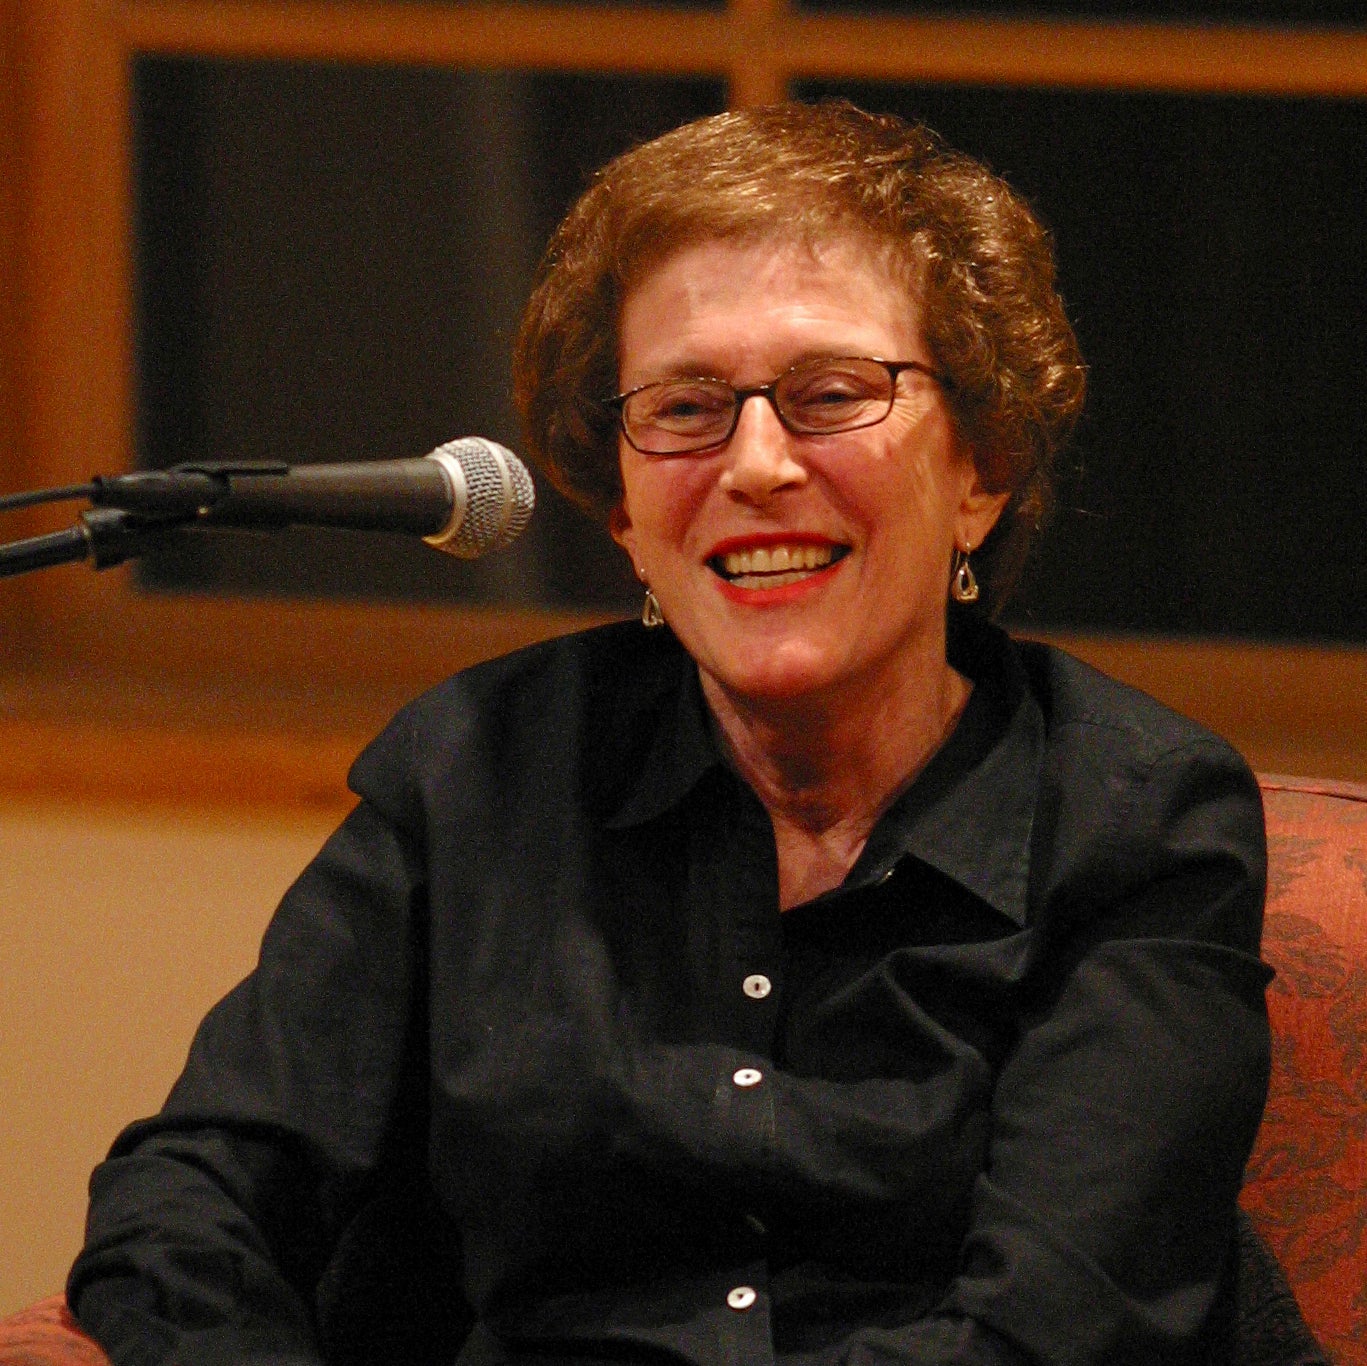 En esta fotografía de 2003 proporcionada por Patricia Williams se ve a Joan Micklin Silver sonriendo al ser entrevistada por Kenneth Turan en el Centro Nacional de Libros en Yiddish, en Amherst, Massachusetts.&nbsp;